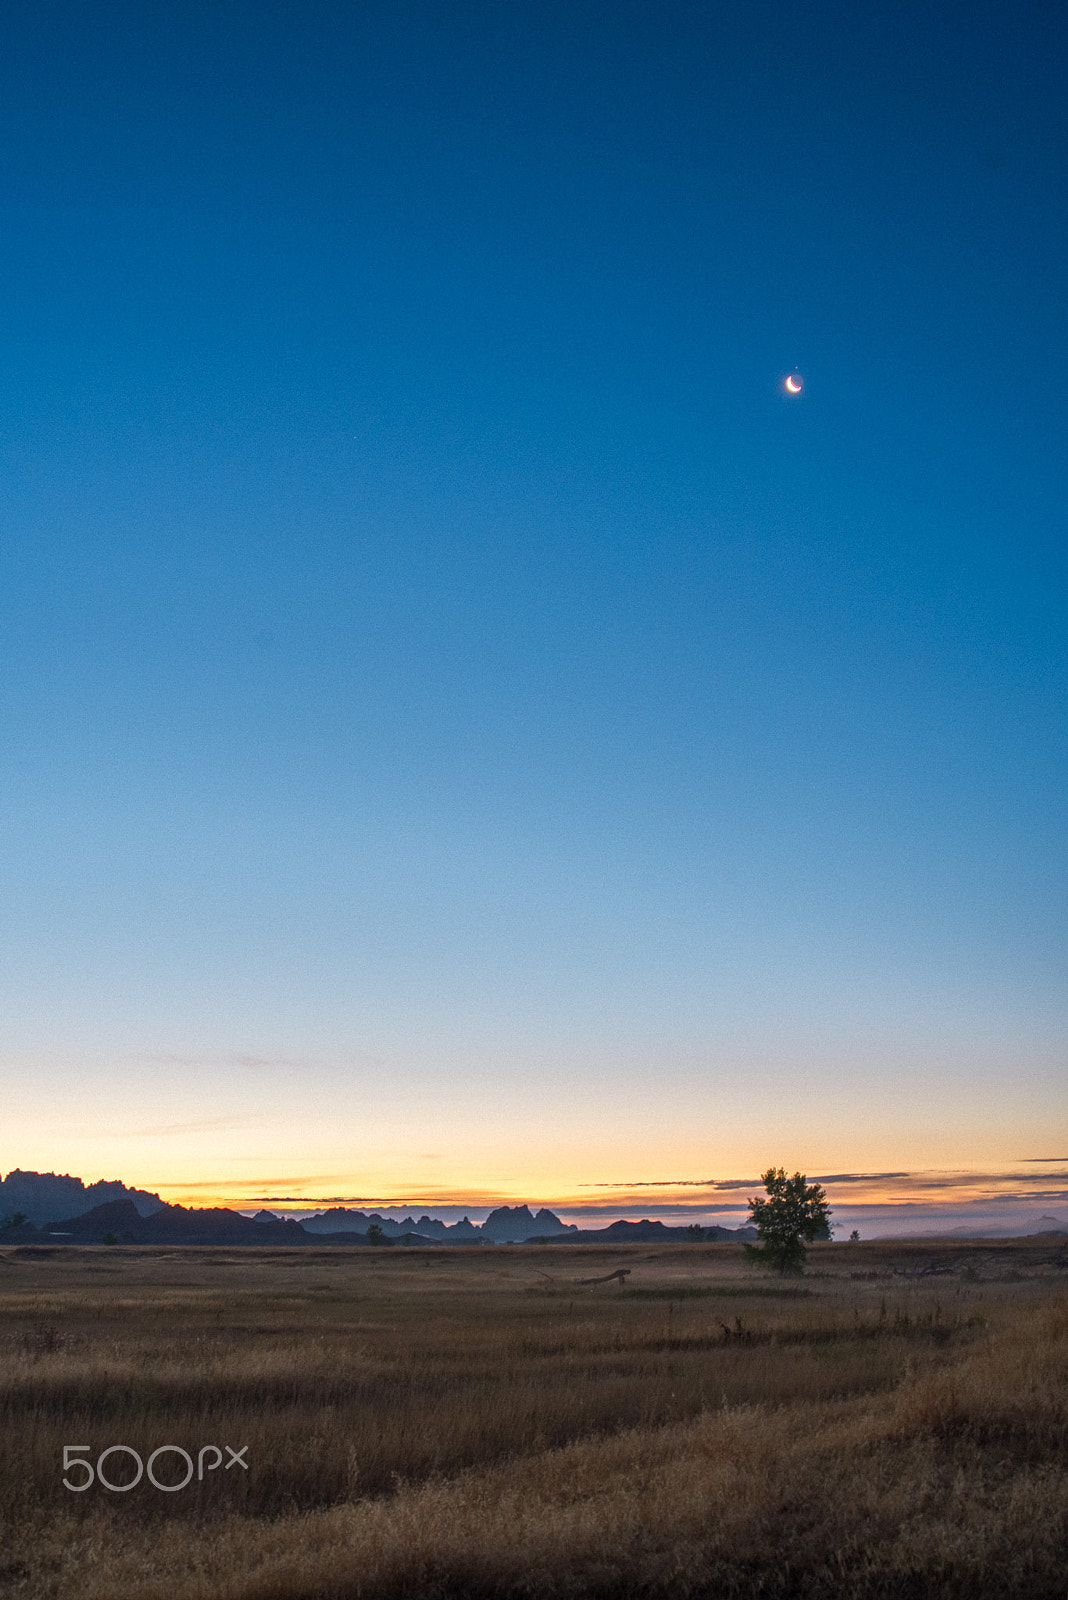 Nikon D610 + AF Zoom-Nikkor 28-80mm f/3.3-5.6G sample photo. Sunrise and moon set, badlands national park photography